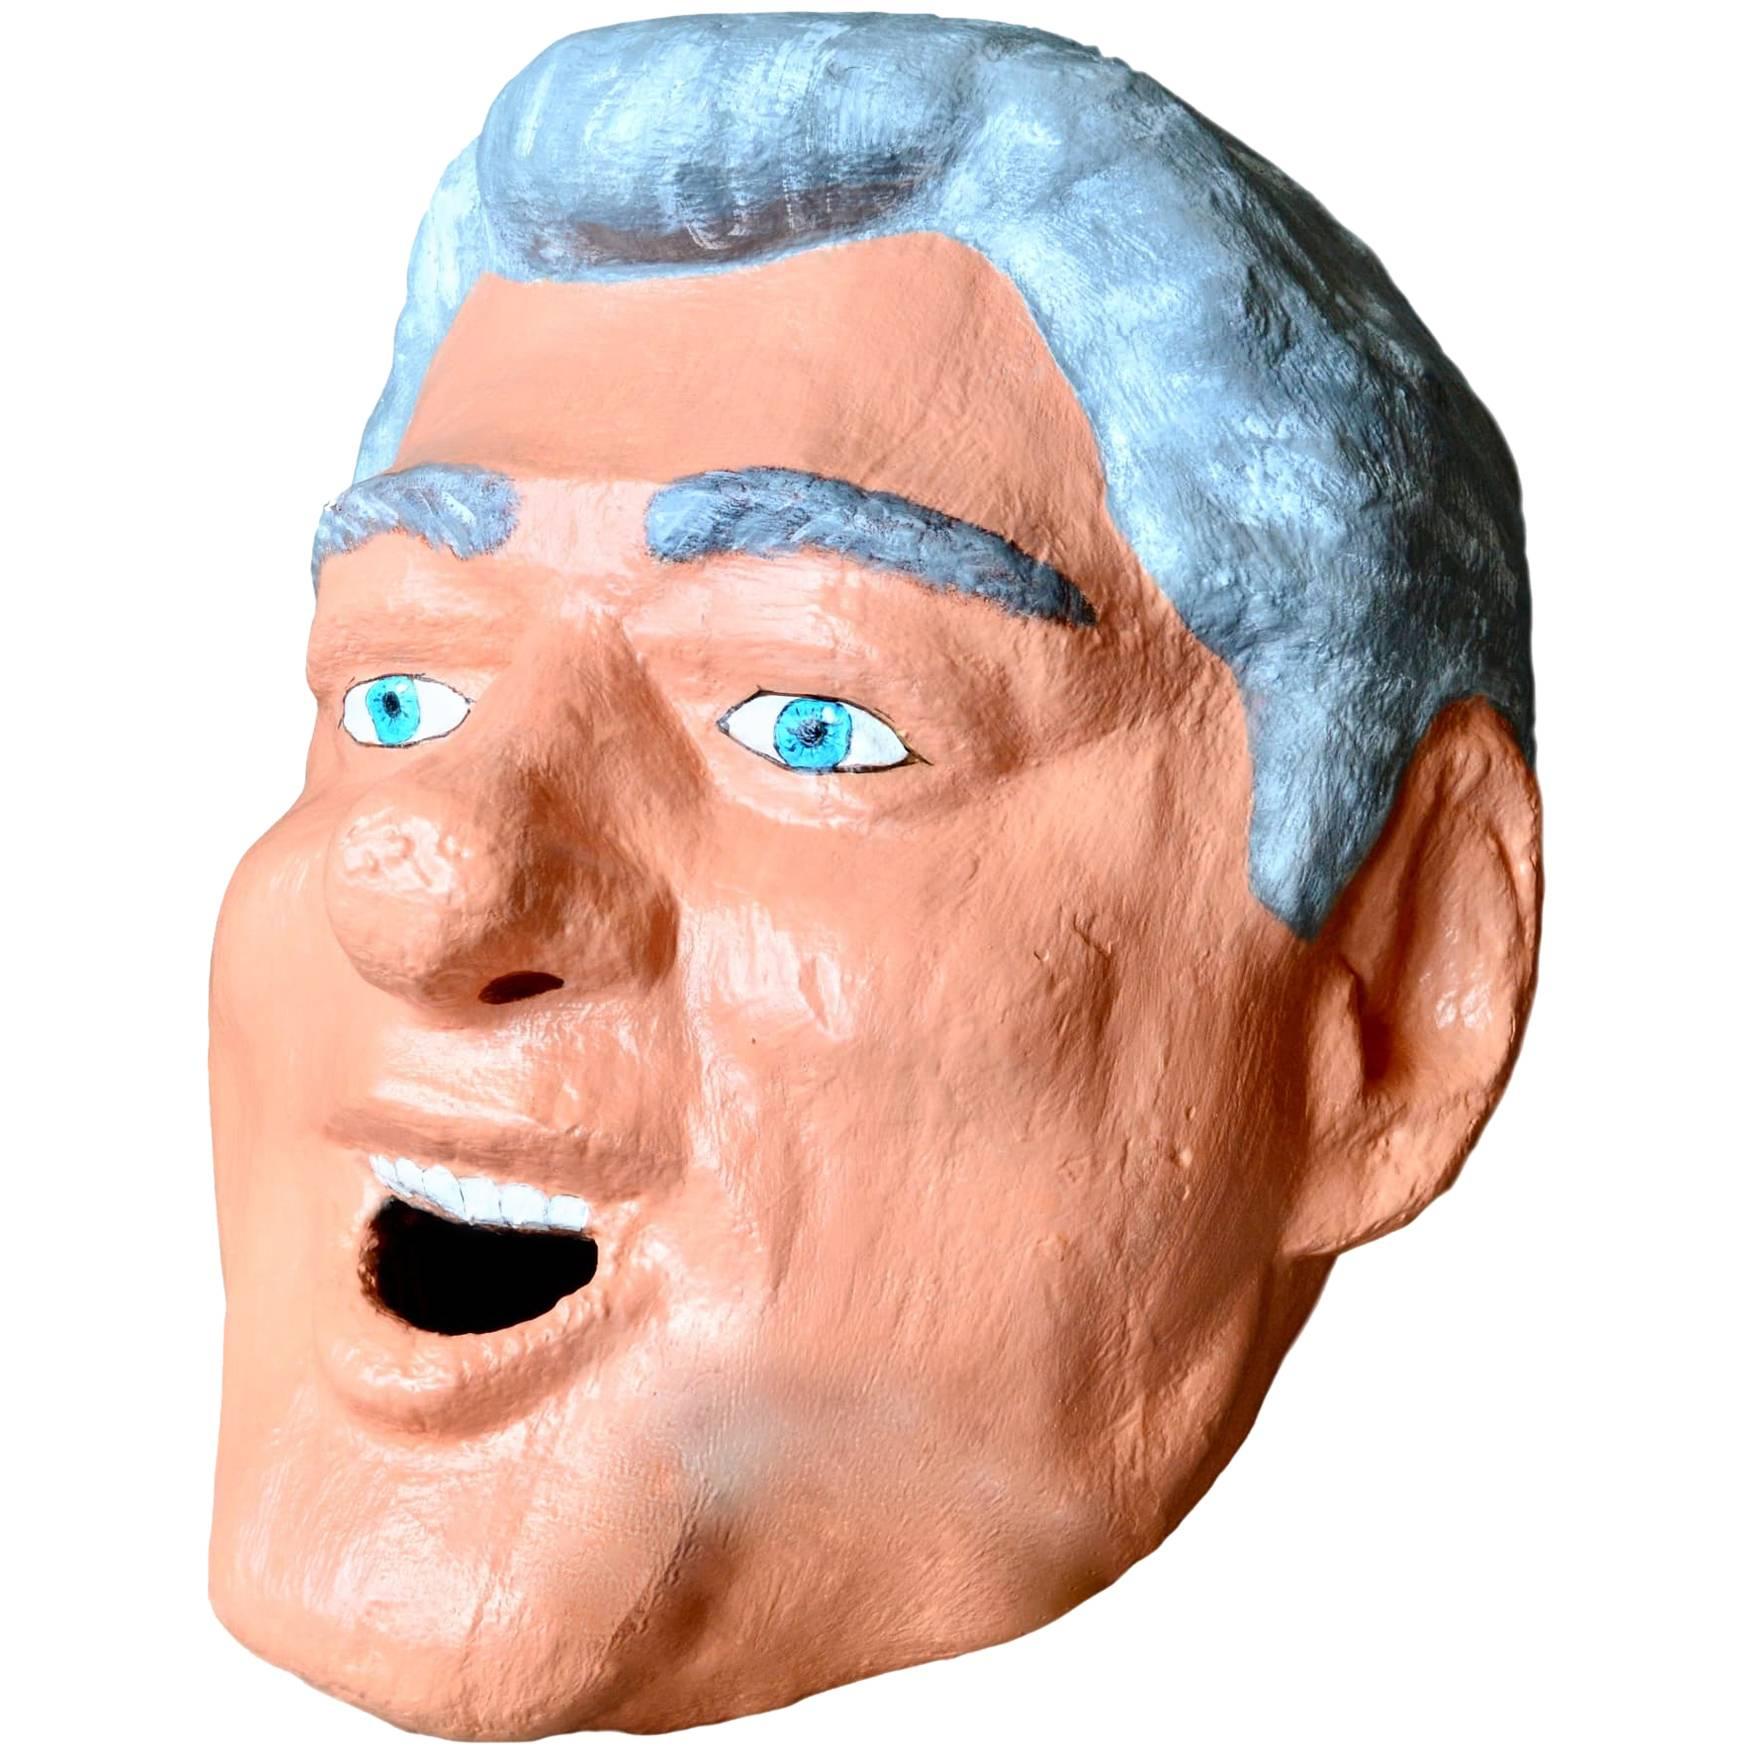 Monumental Bill Clinton Sculptural Head For Sale